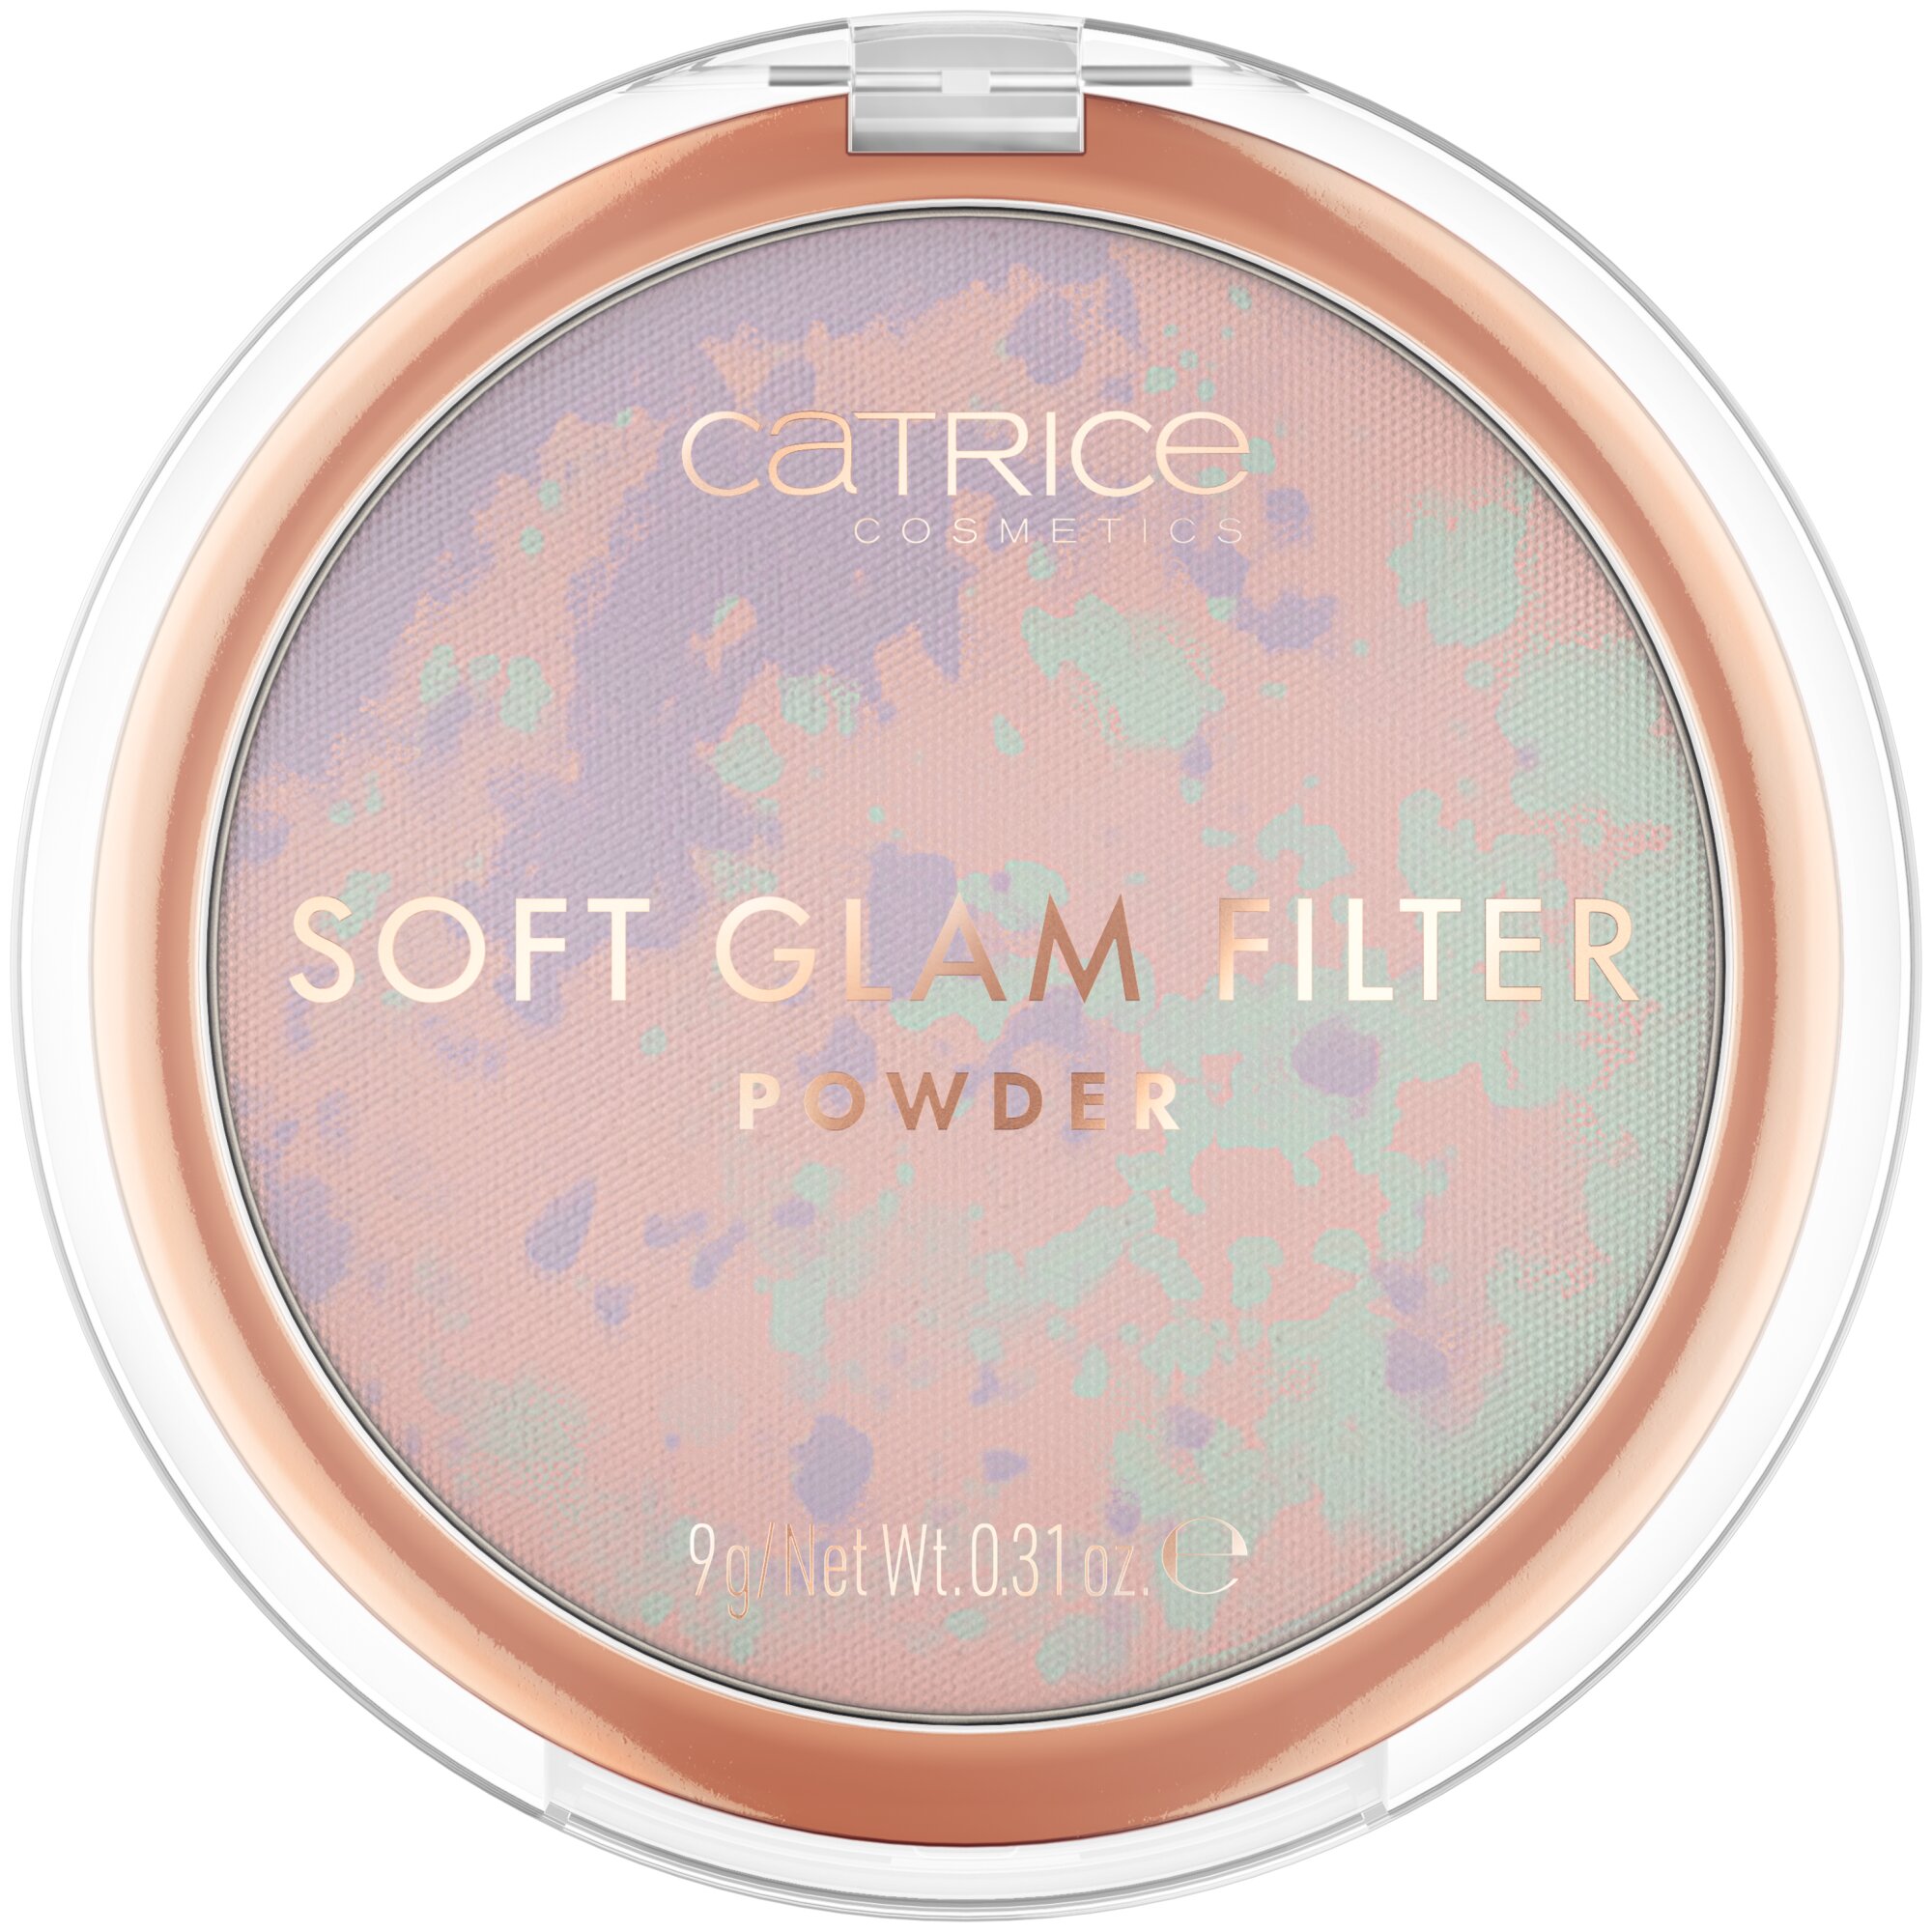 Pudra pentru fata Soft Glam Filter, 010 - Beautiful You, 9 g, Catrice